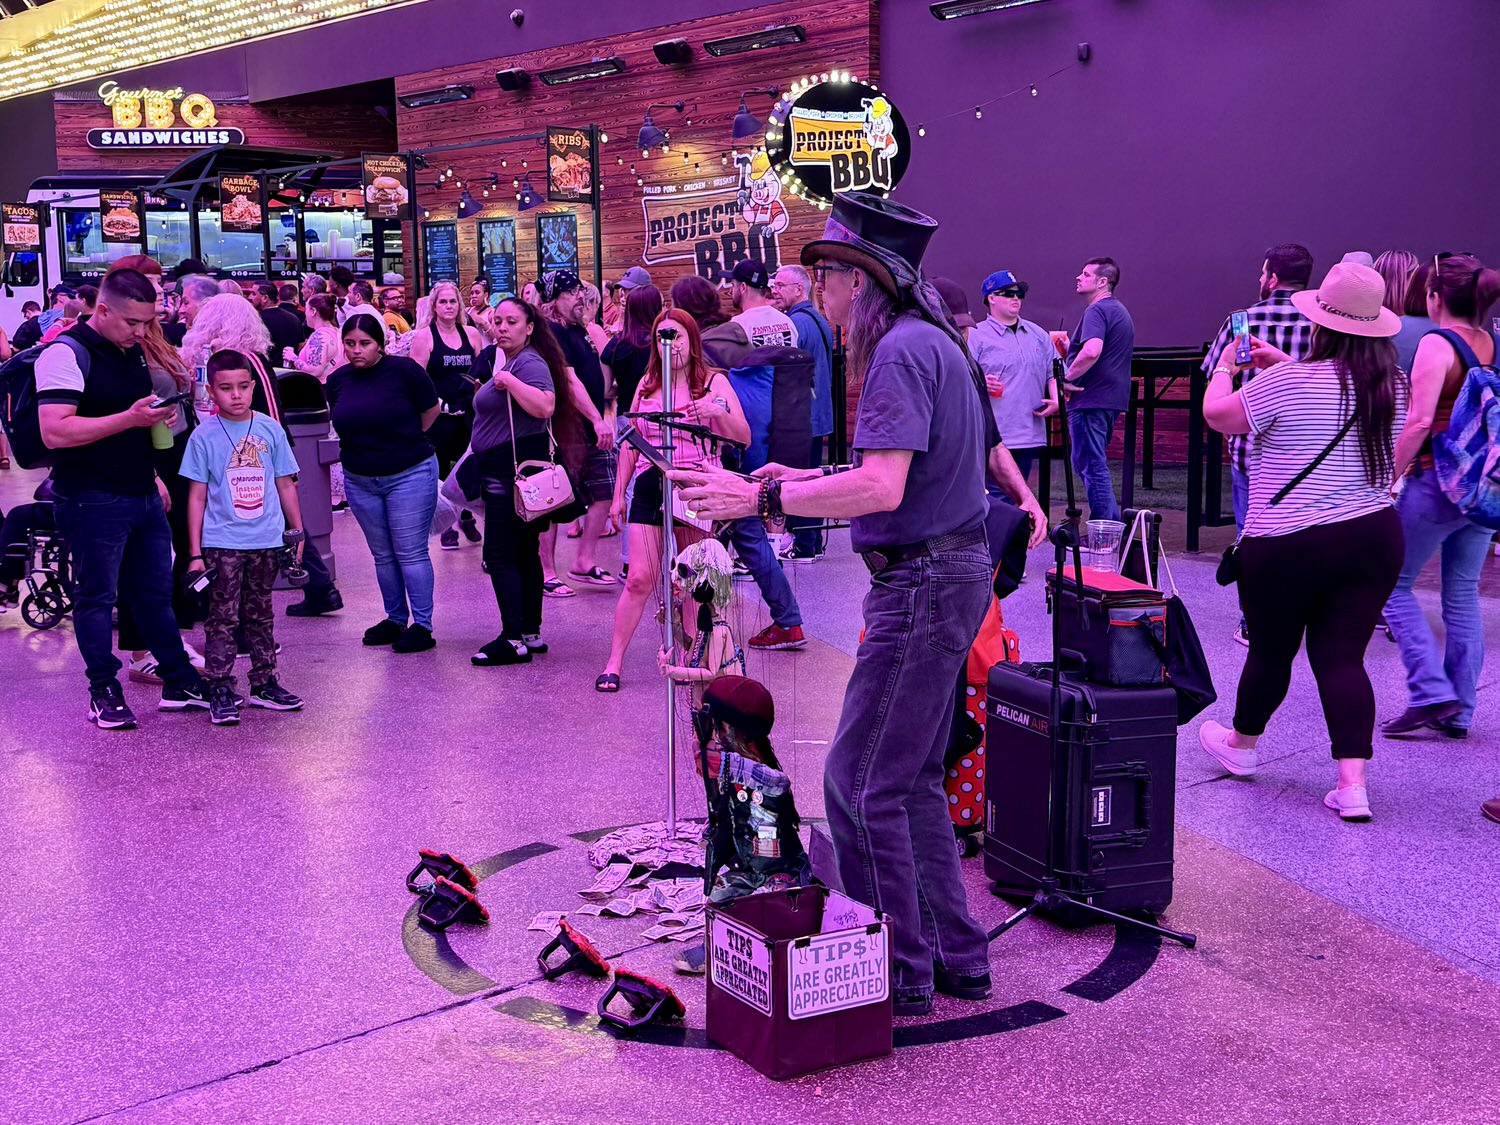 弗蒙街體驗 Fremont Street Experience
SlotZilla Zipline
Viva Vision, Music Light Show
Welcome to Fabulous DOWNTOWN Las Vegas Sign
